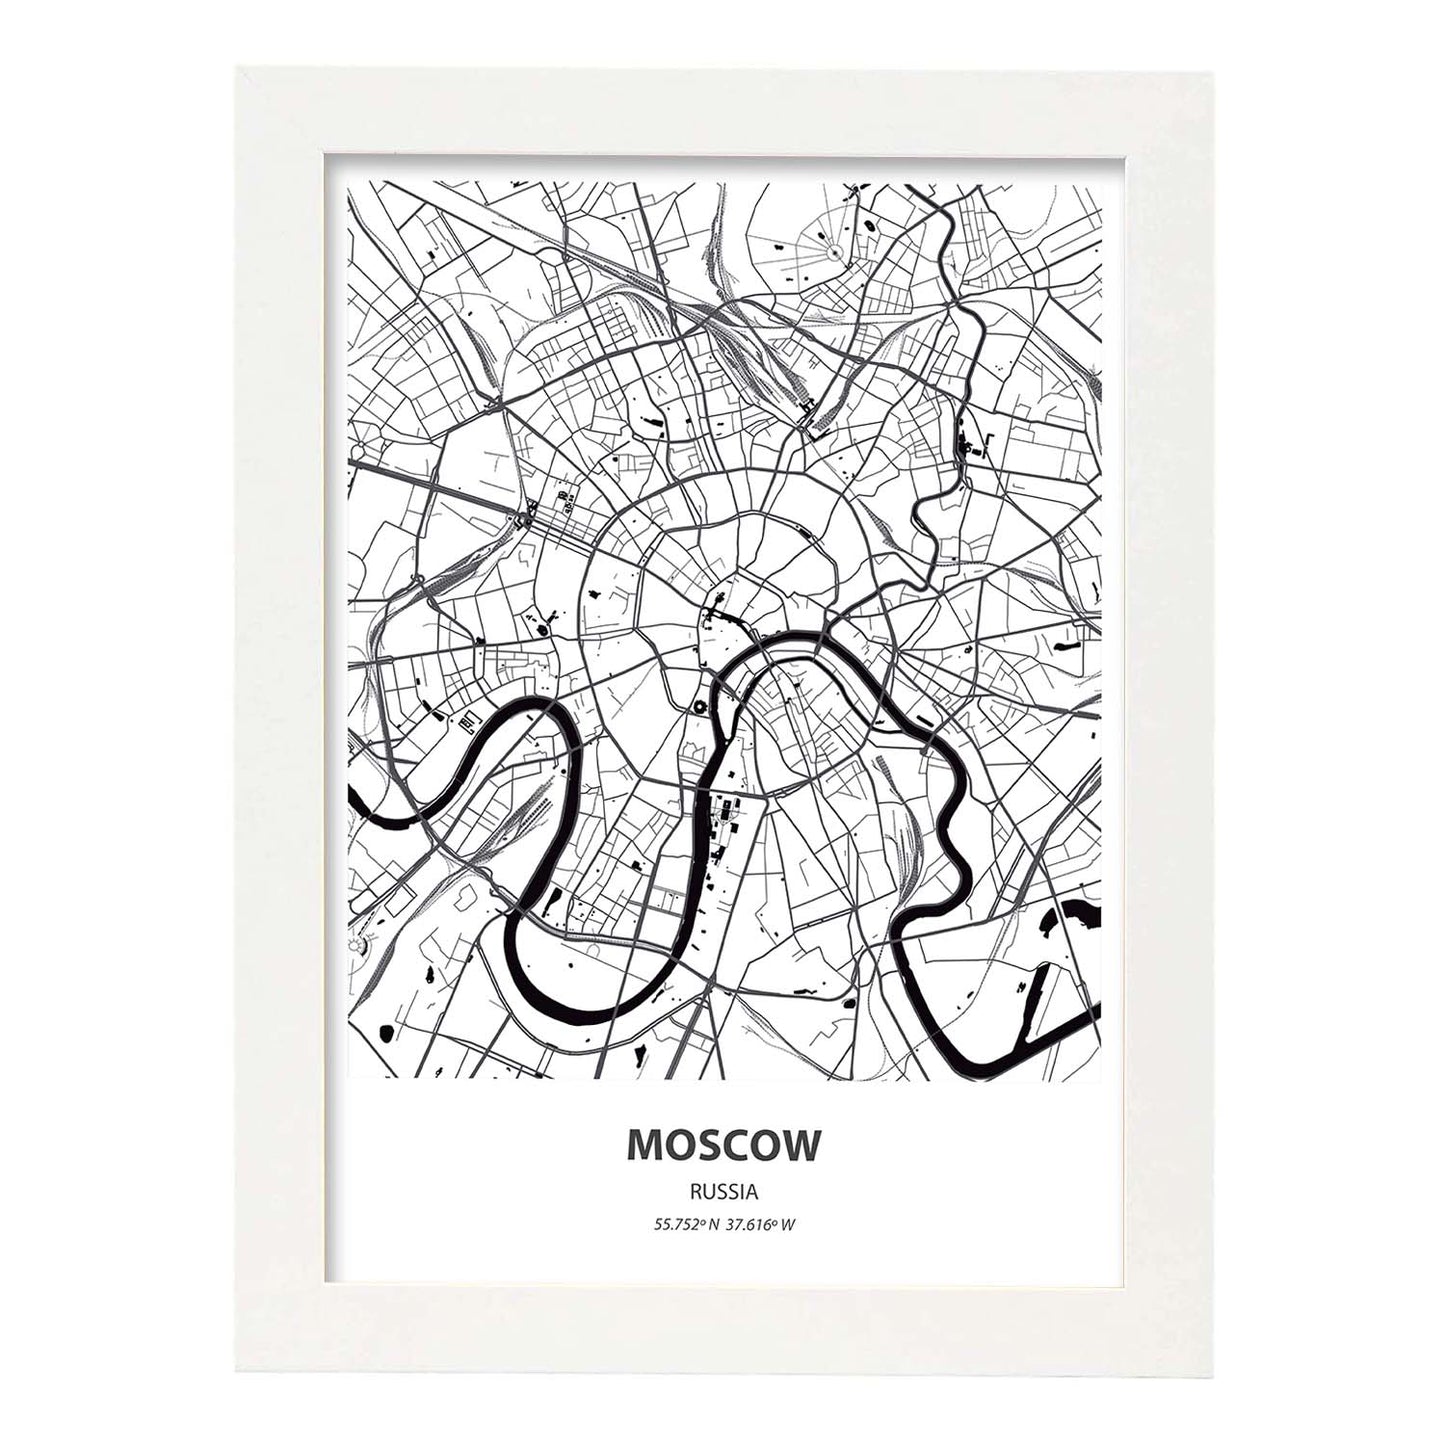 Poster con mapa de Moscow - Rusia. Láminas de ciudades de Asia con mares y ríos en color negro.-Artwork-Nacnic-A4-Marco Blanco-Nacnic Estudio SL